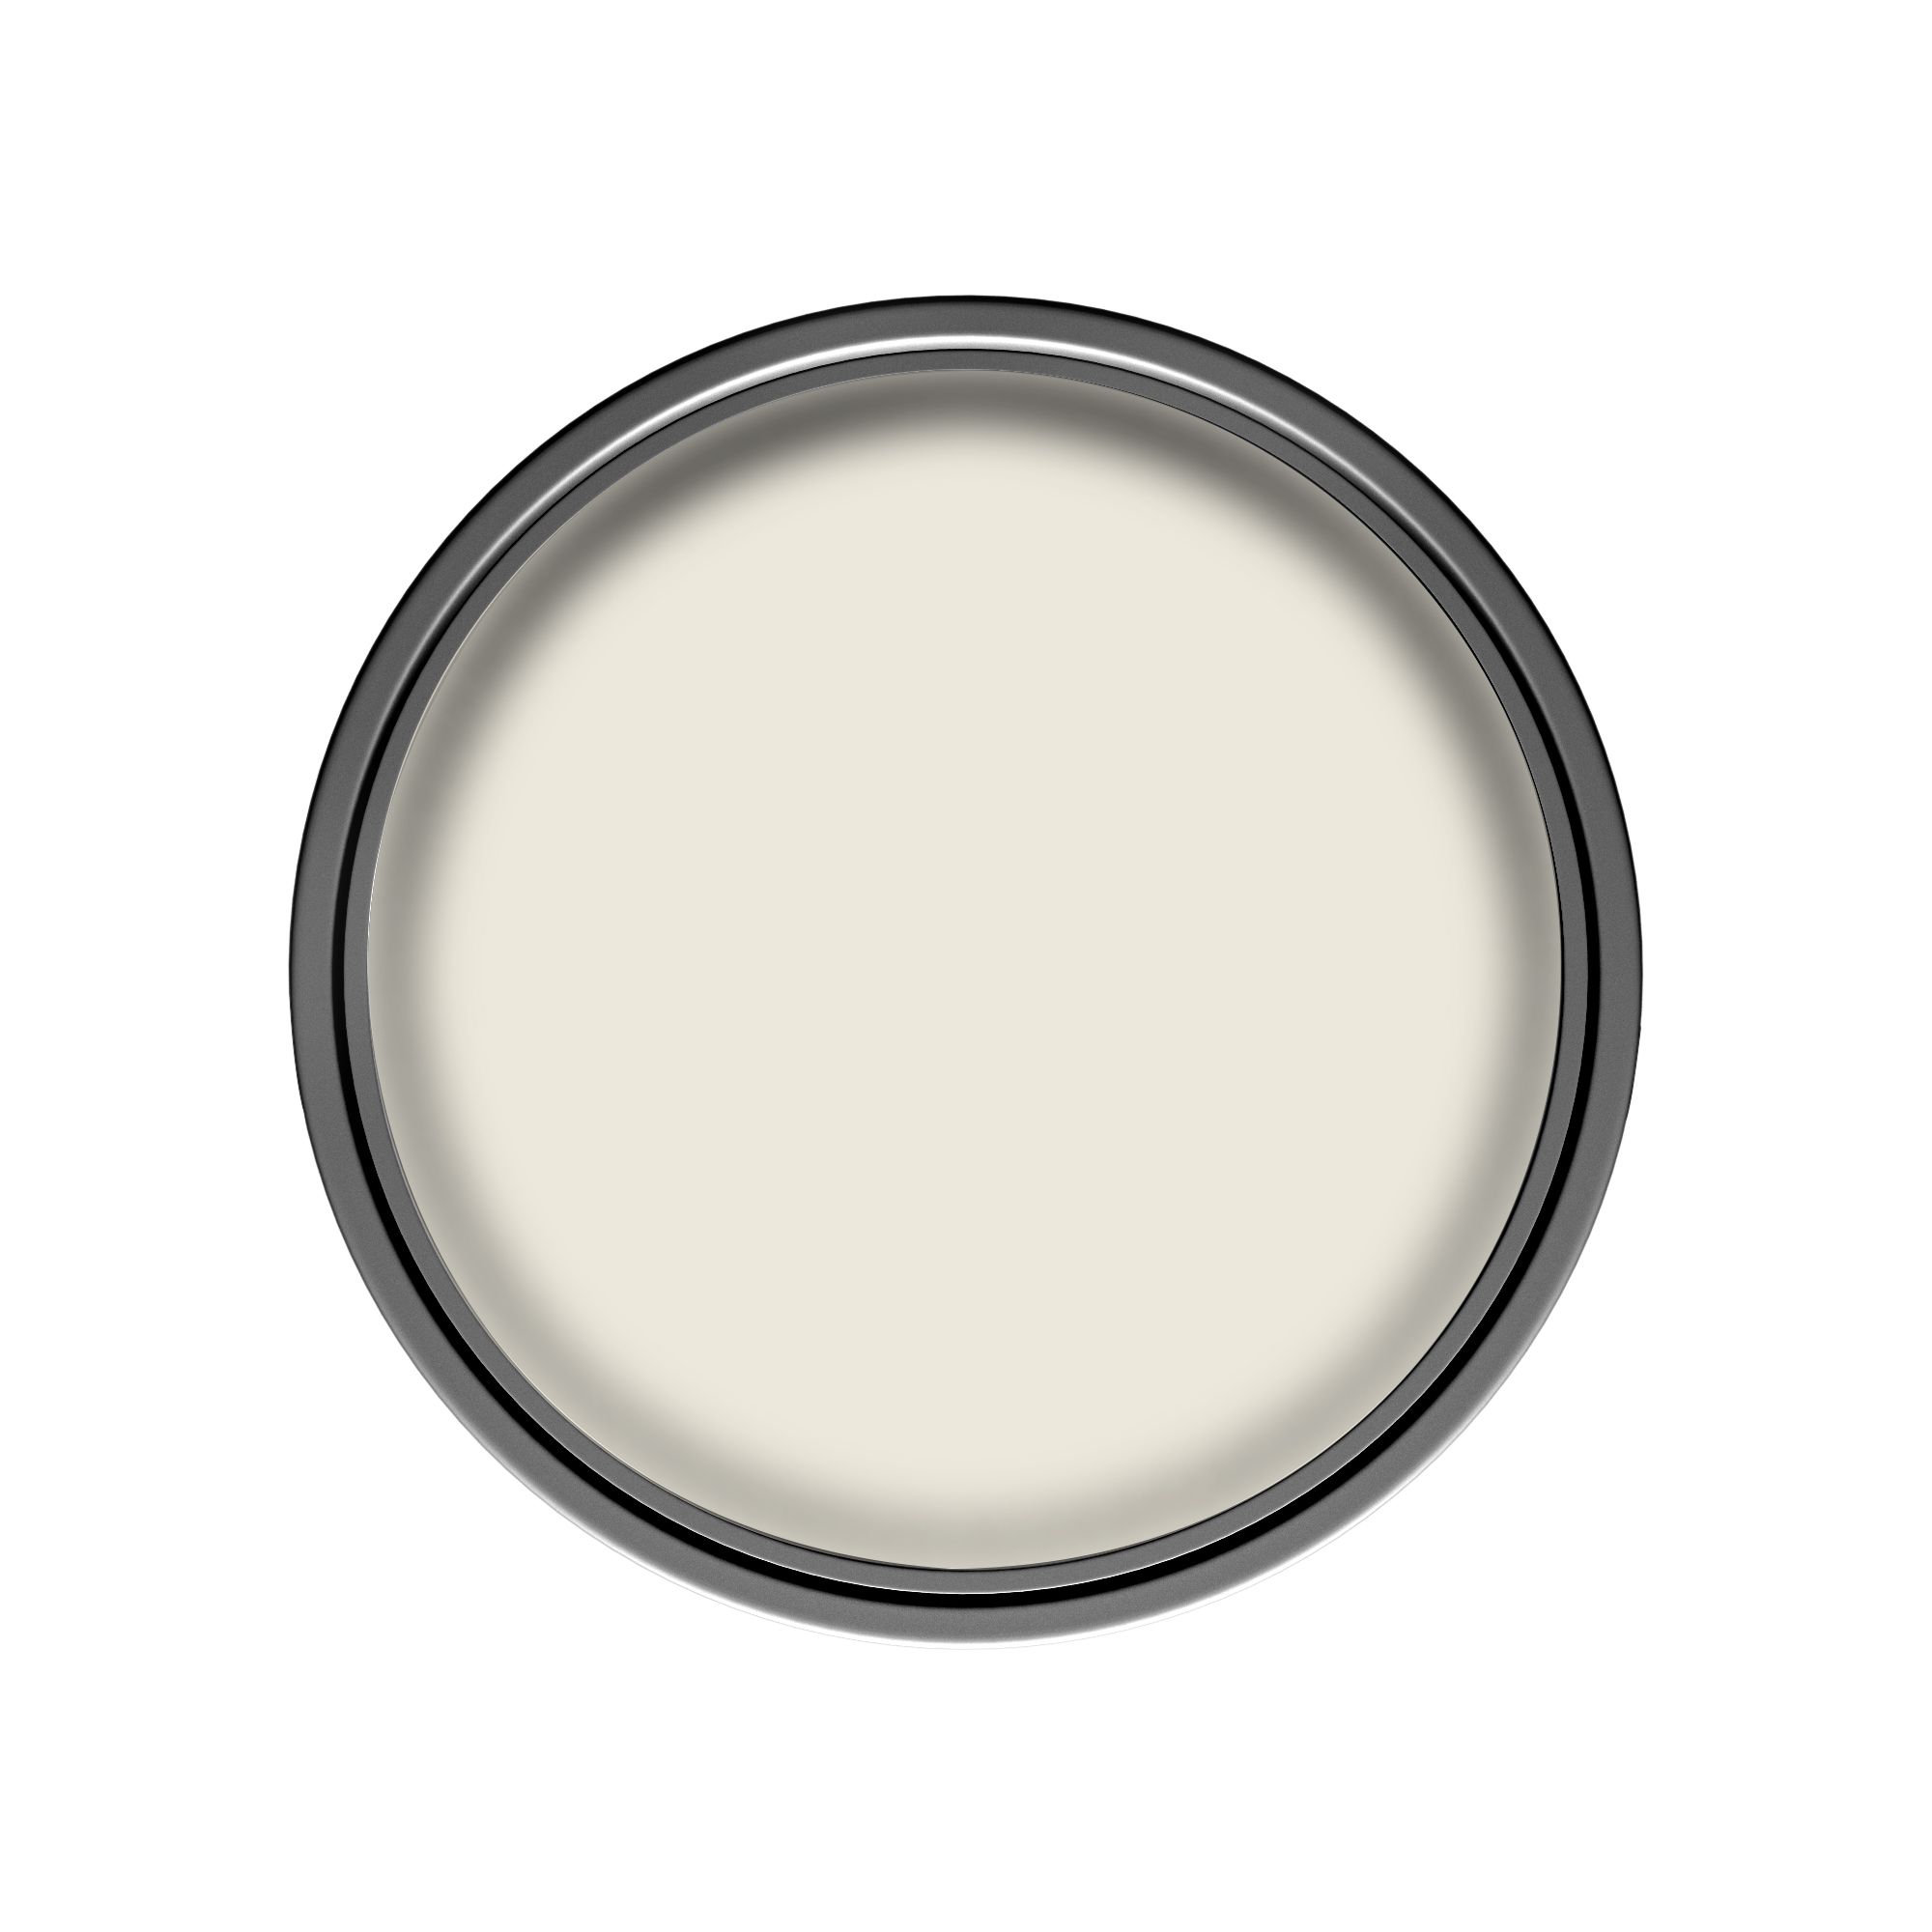 Dulux Walls & ceilings Almond white Silk Emulsion paint, 5L